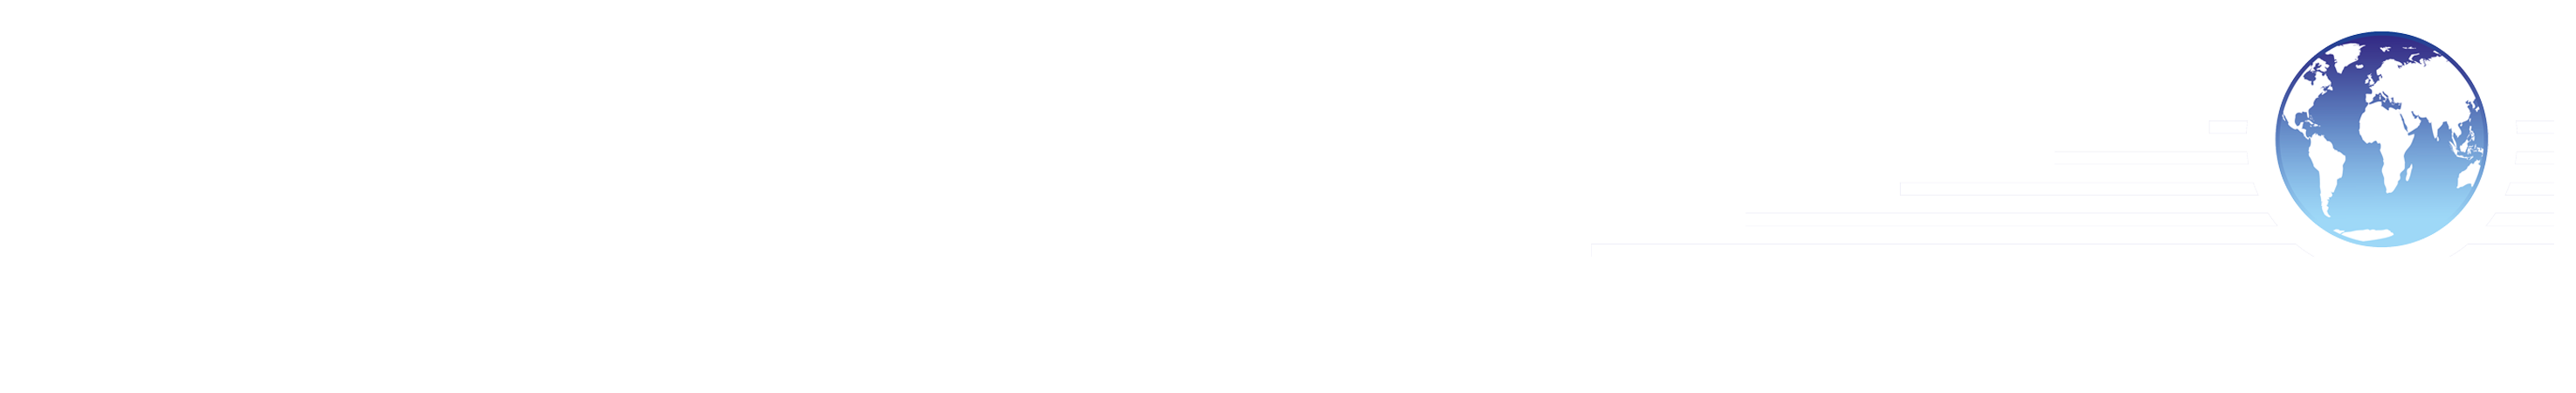 https://www.dr-rath-foundation.org/wp-content/uploads/2018/01/DRHFwhite-website-header.png